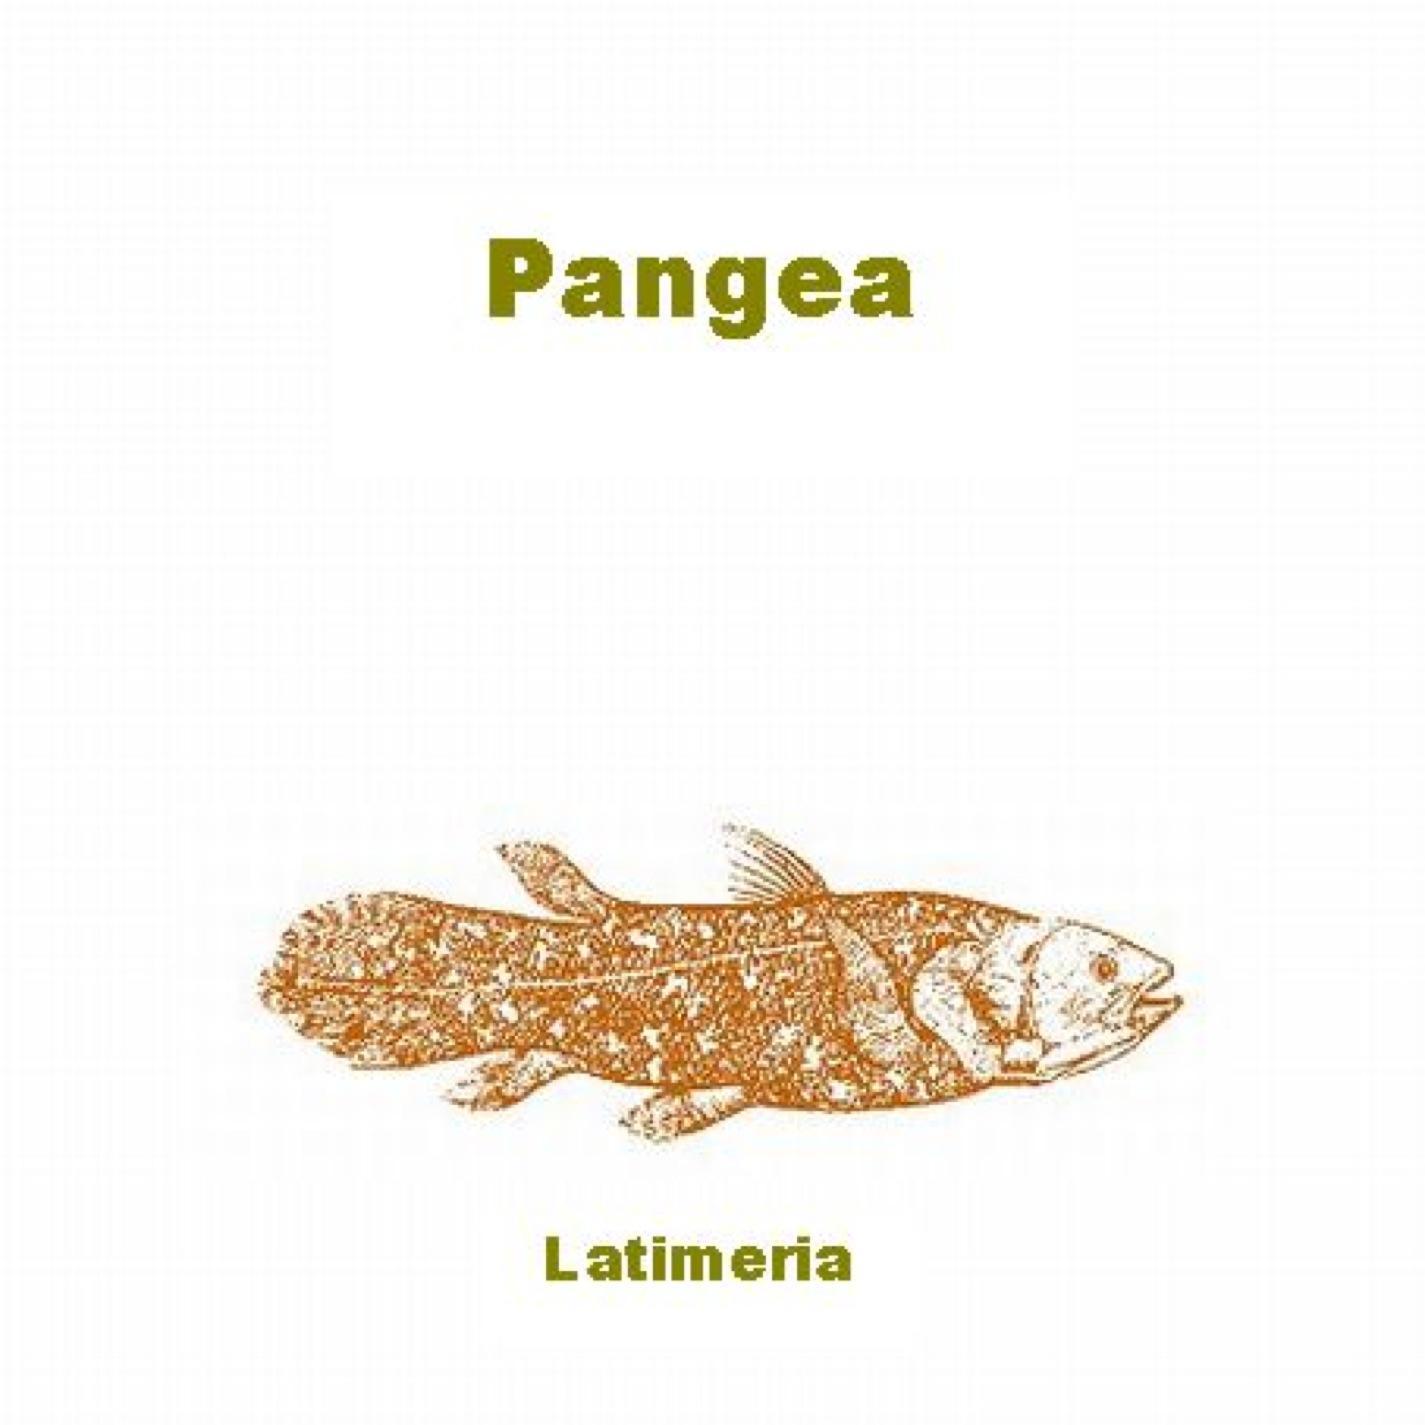 Pangea - Comet